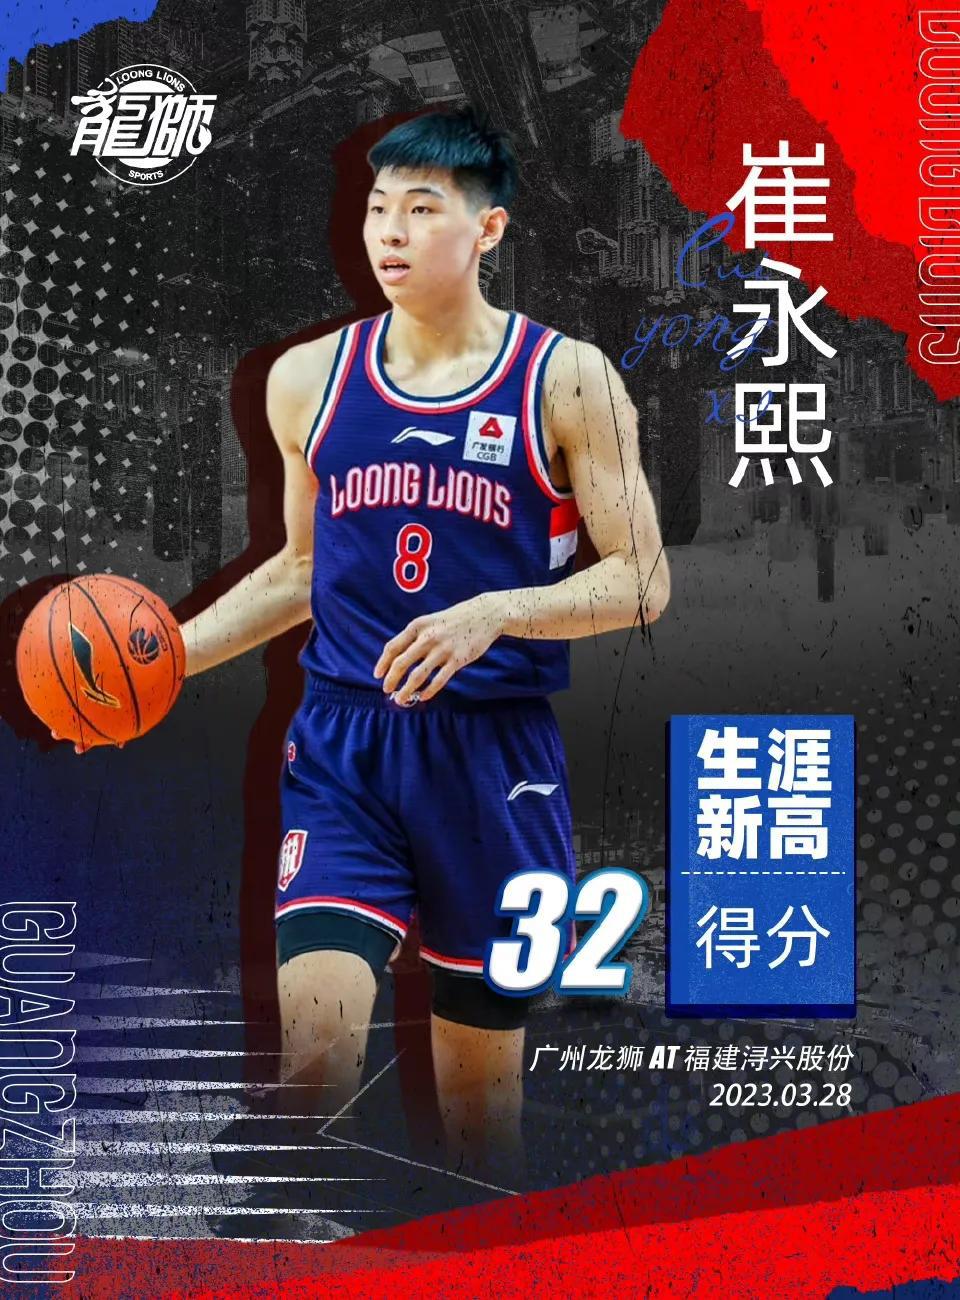 崔永熙32分创新高 入选人才库后更亮眼

CBA常规赛，广州男篮以115比100(2)